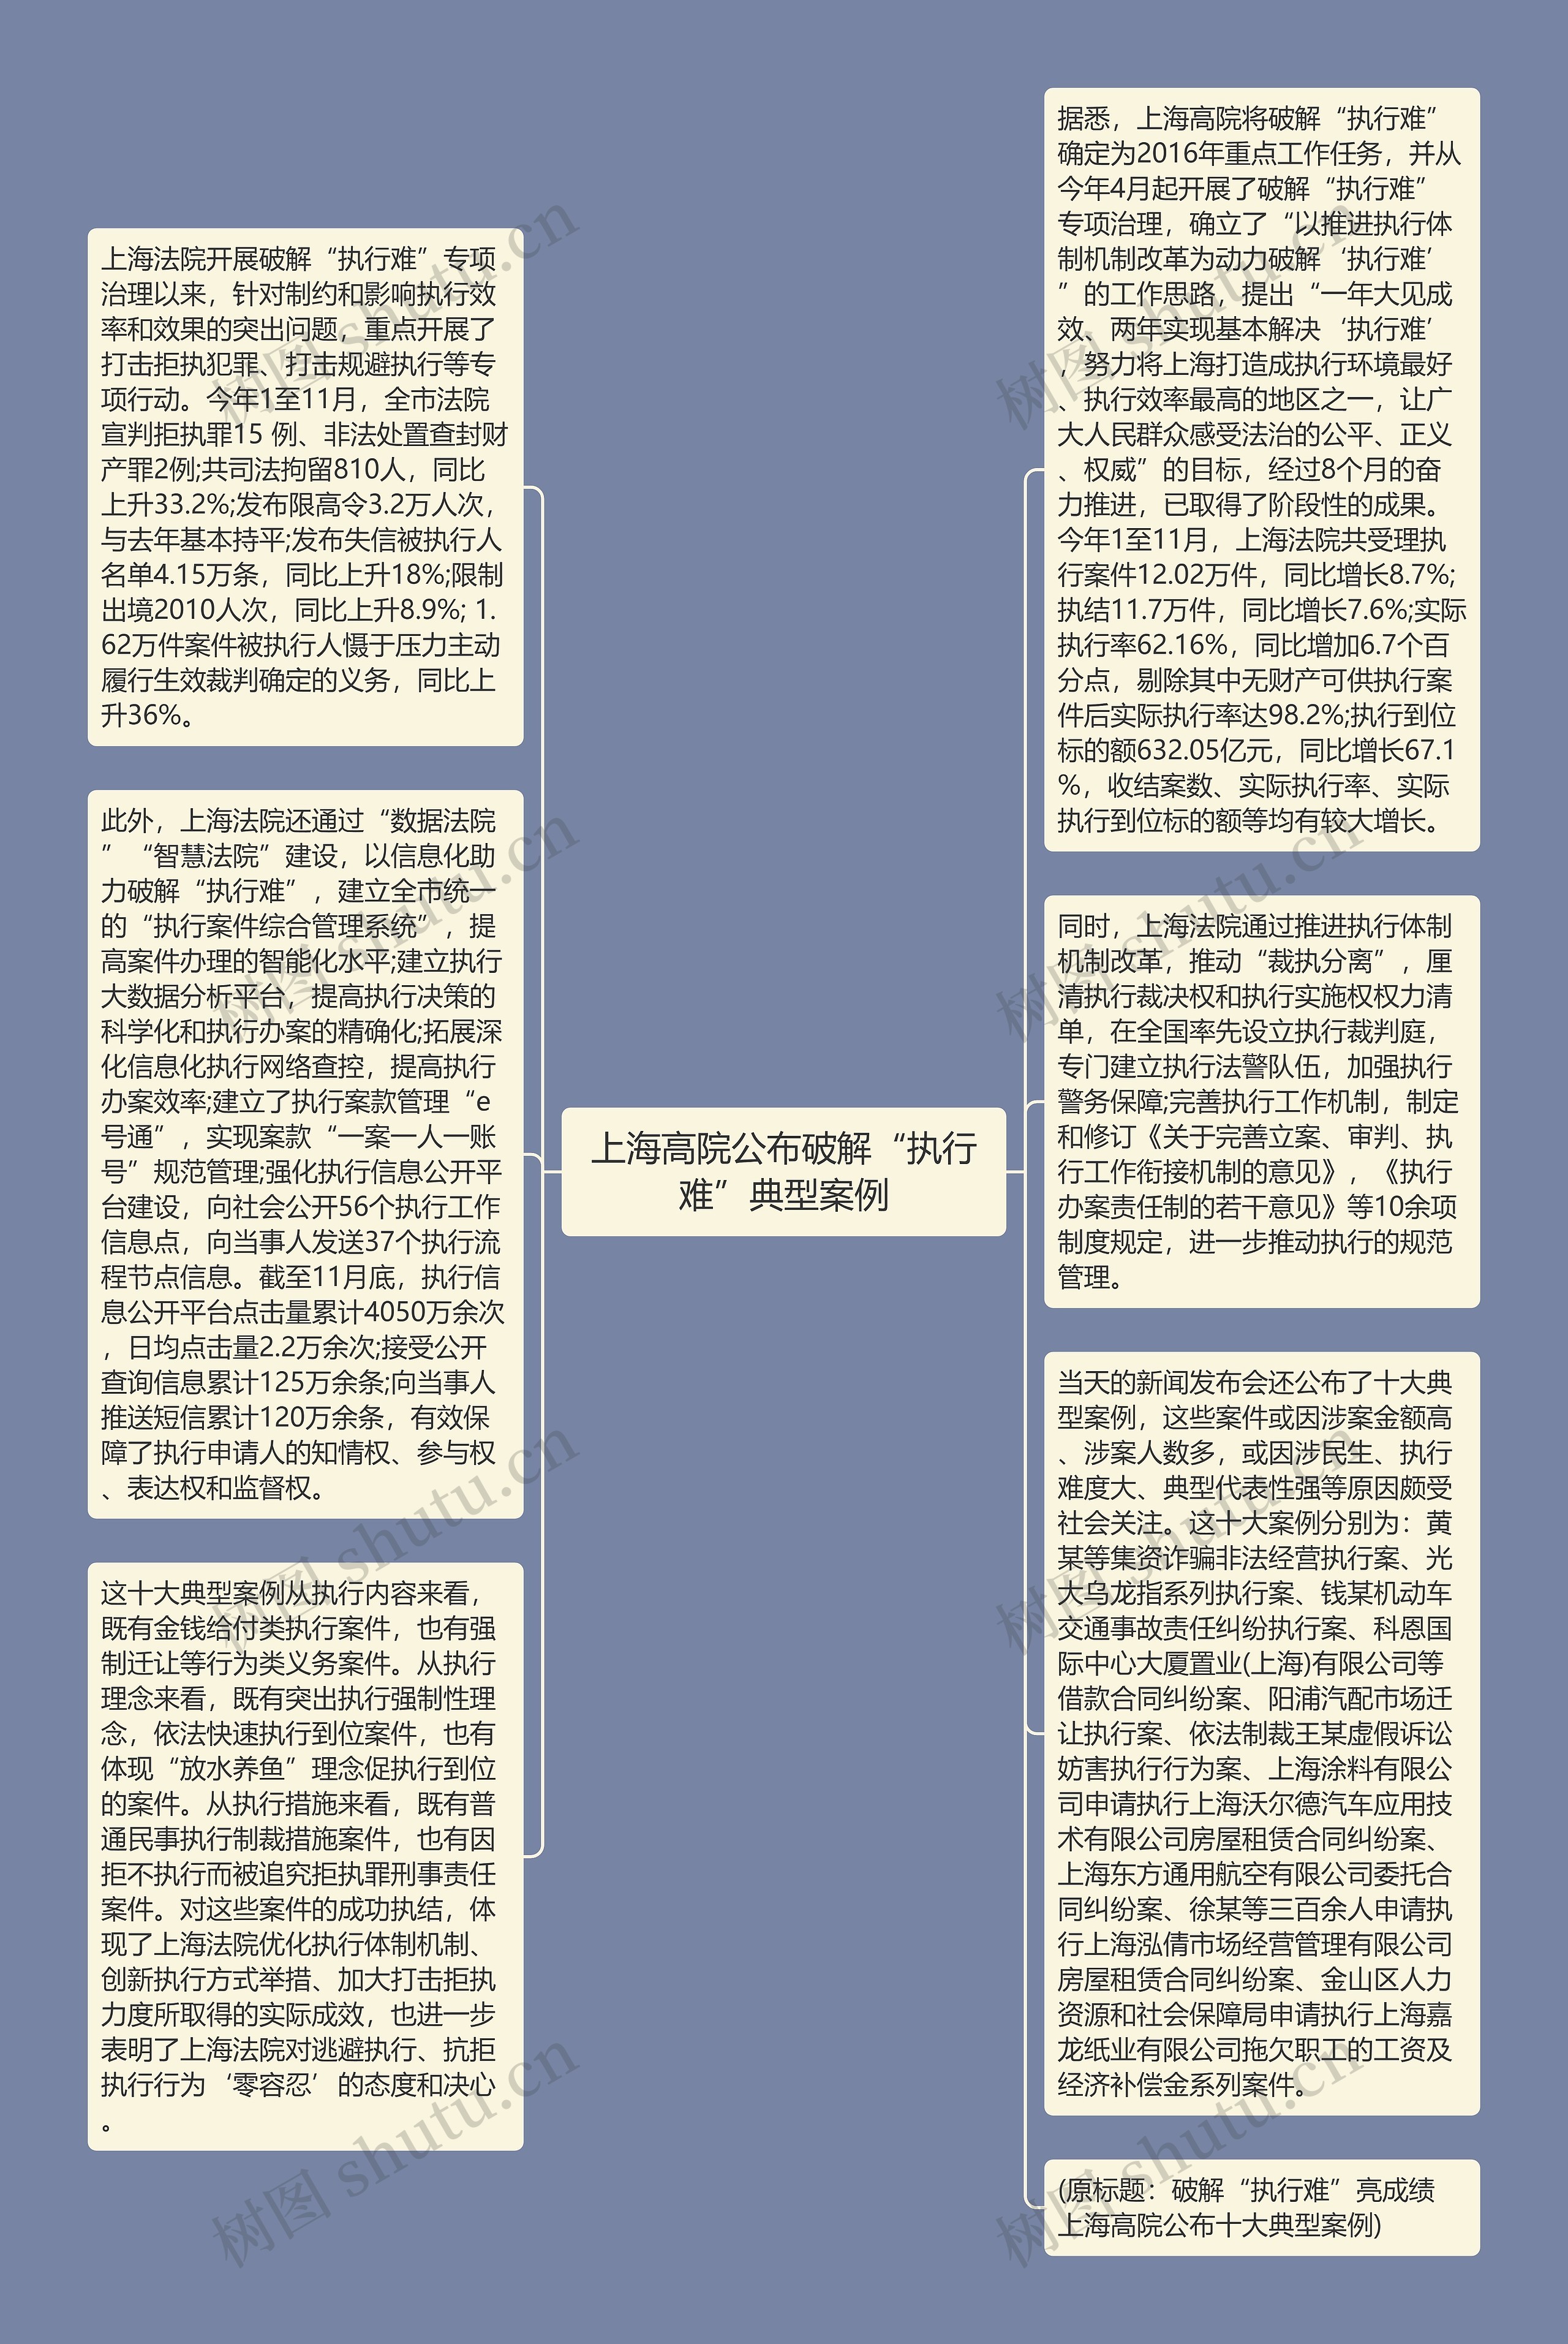 上海高院公布破解“执行难”典型案例思维导图